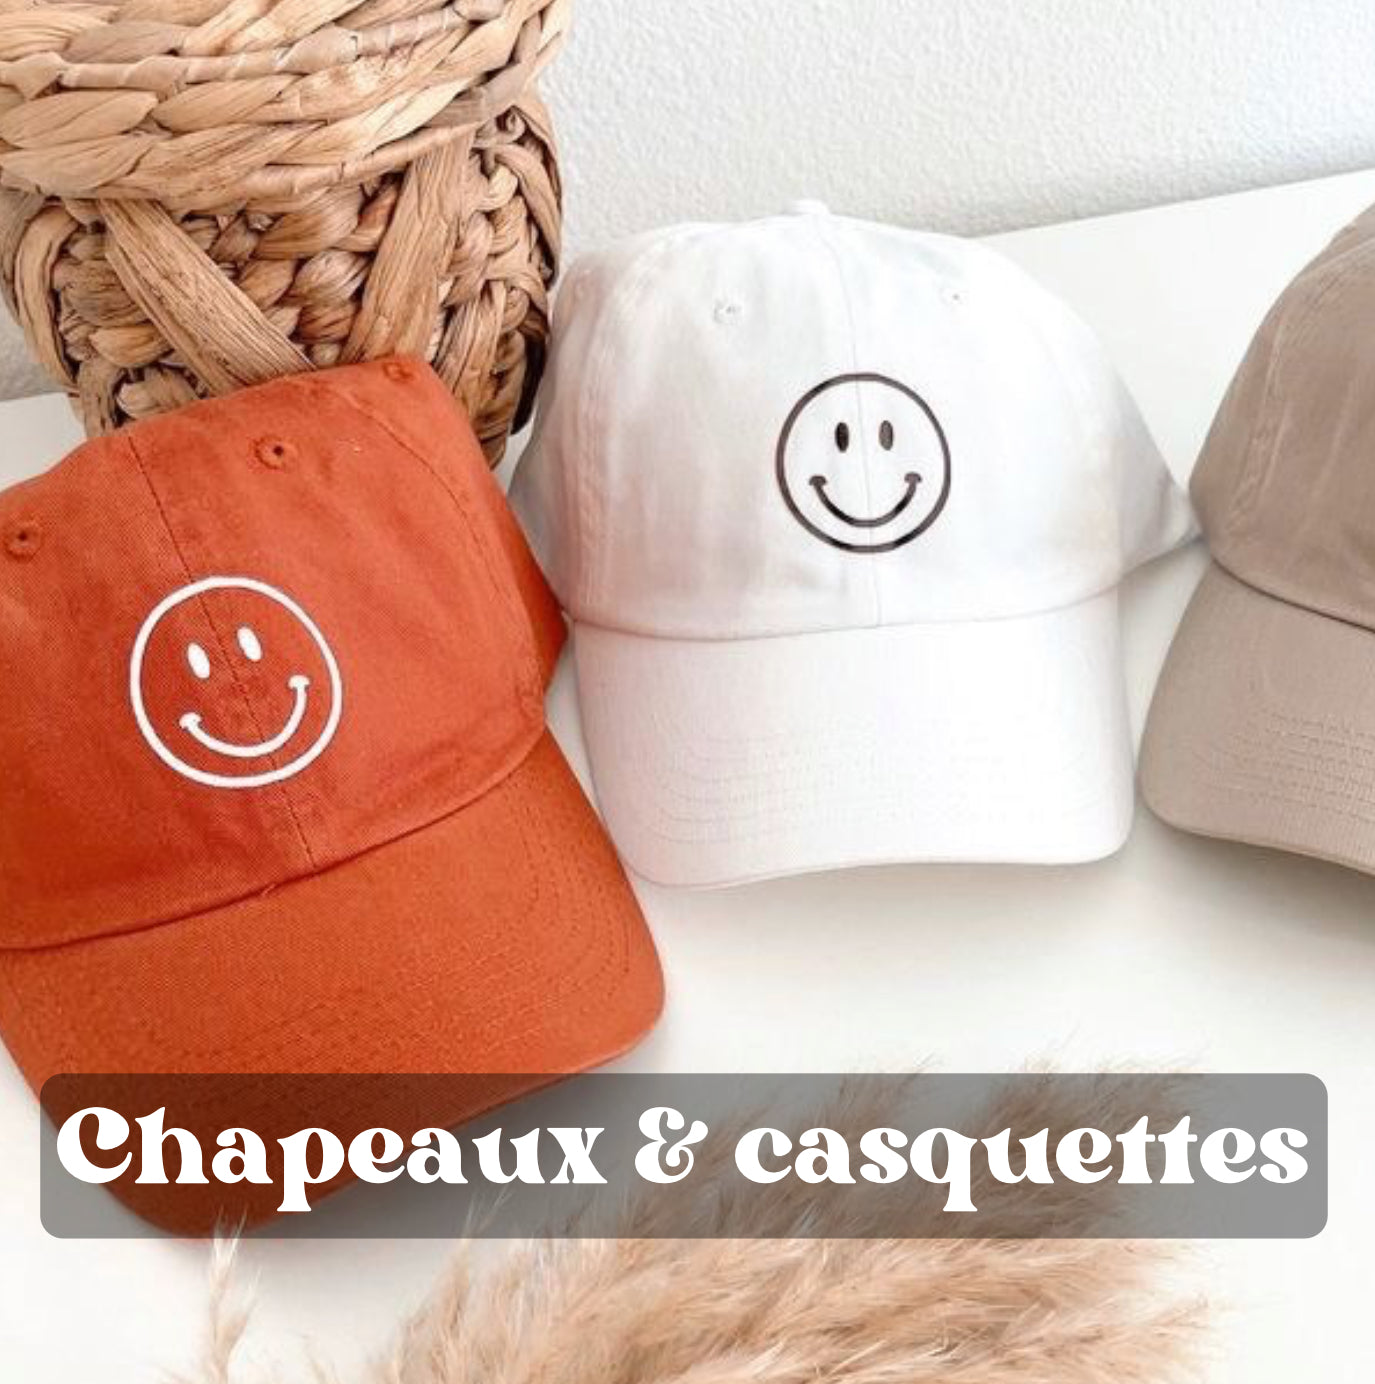 Chapeaux & casquettes